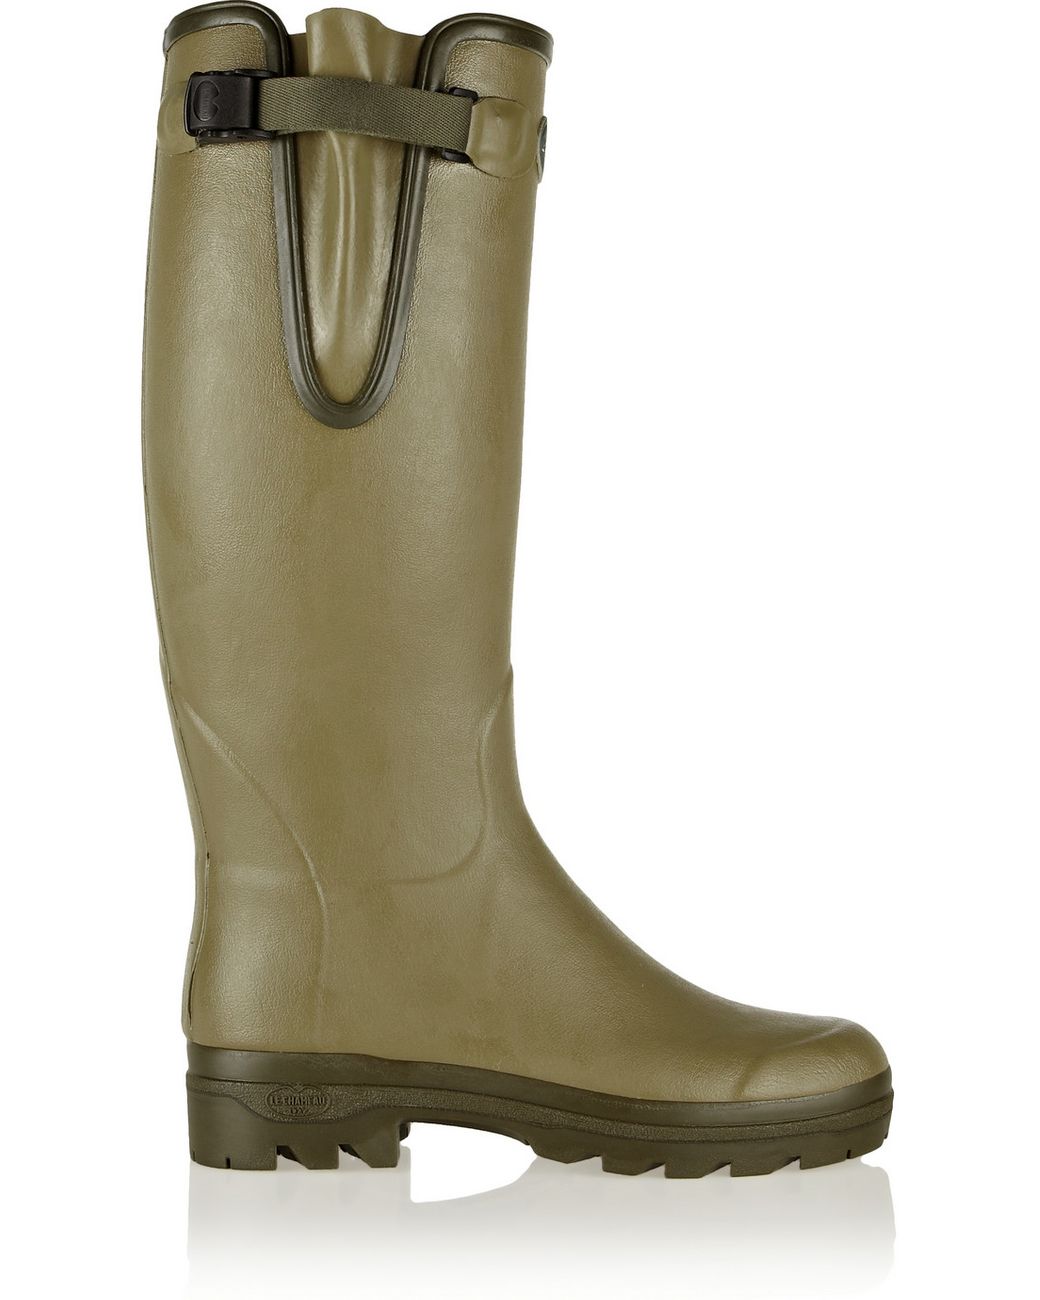 Le Chameau Womens Ladies Vert Green Vierzon Jersey Wellies Wellington Boots Size 